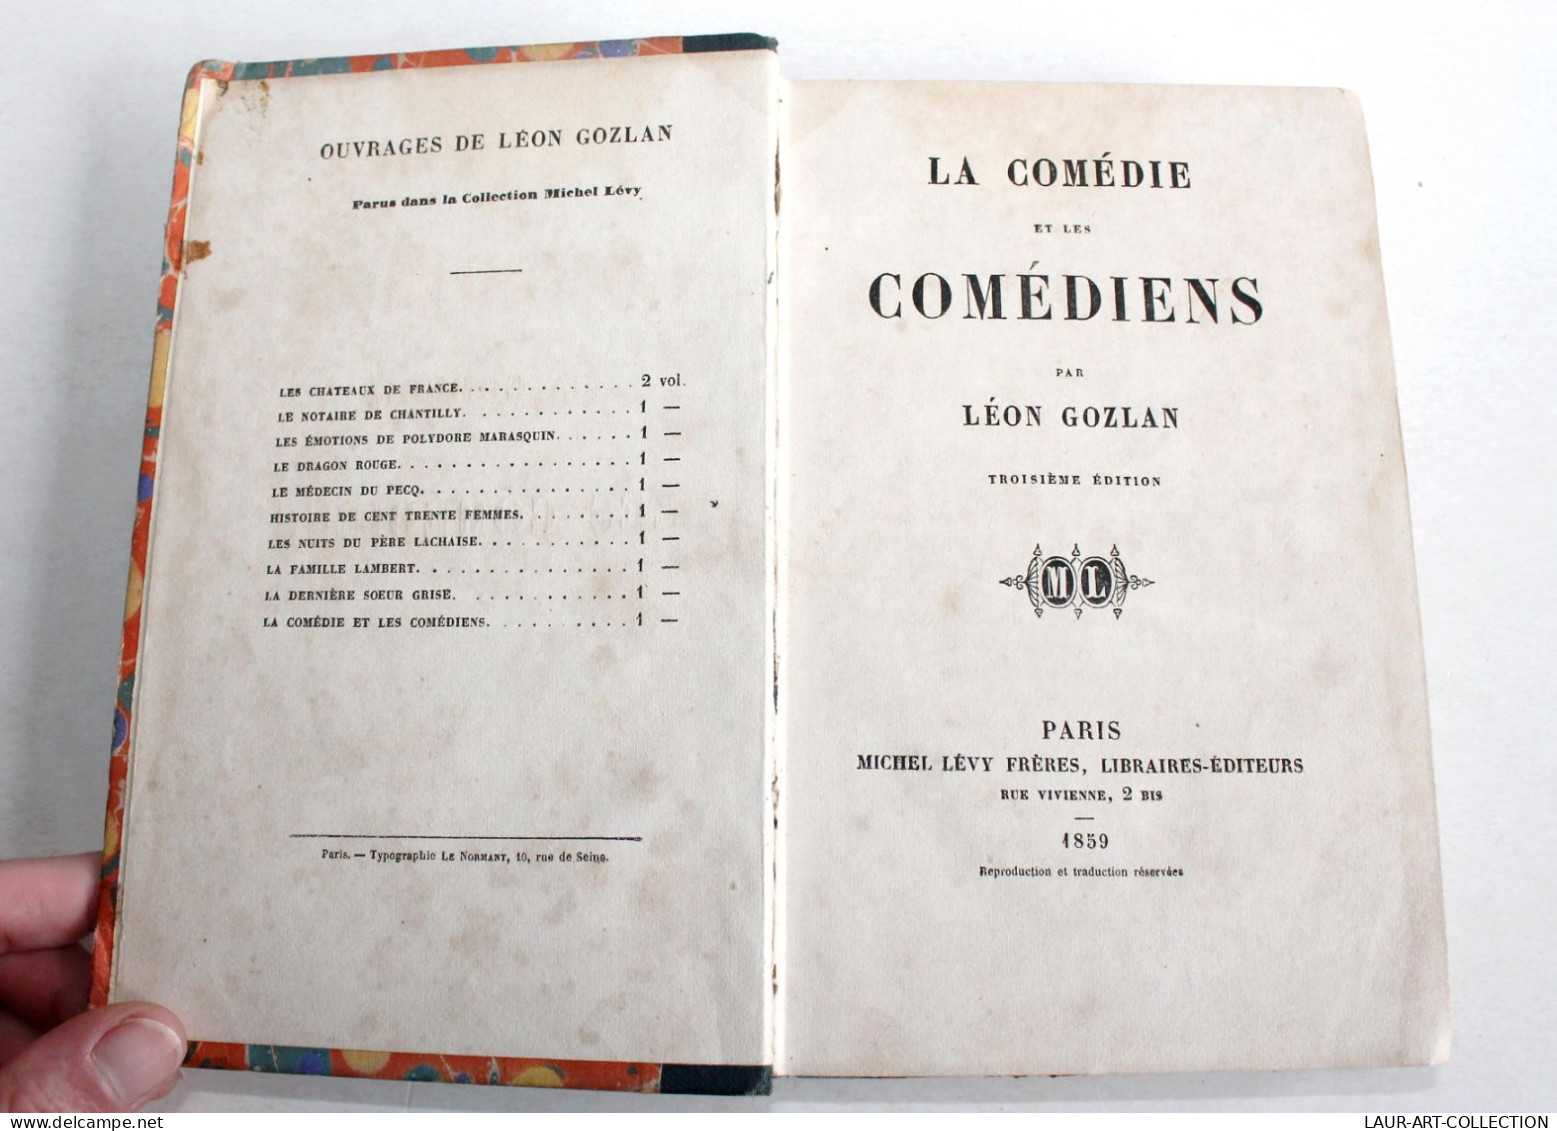 LA COMEDIE ET LES COMEDIENS Par LEON GOZLAN, 3e EDITION 1859 MICHEL LEVY EDITEUR / ANCIEN LIVRE XIXe SIECLE (1803.232) - 1801-1900